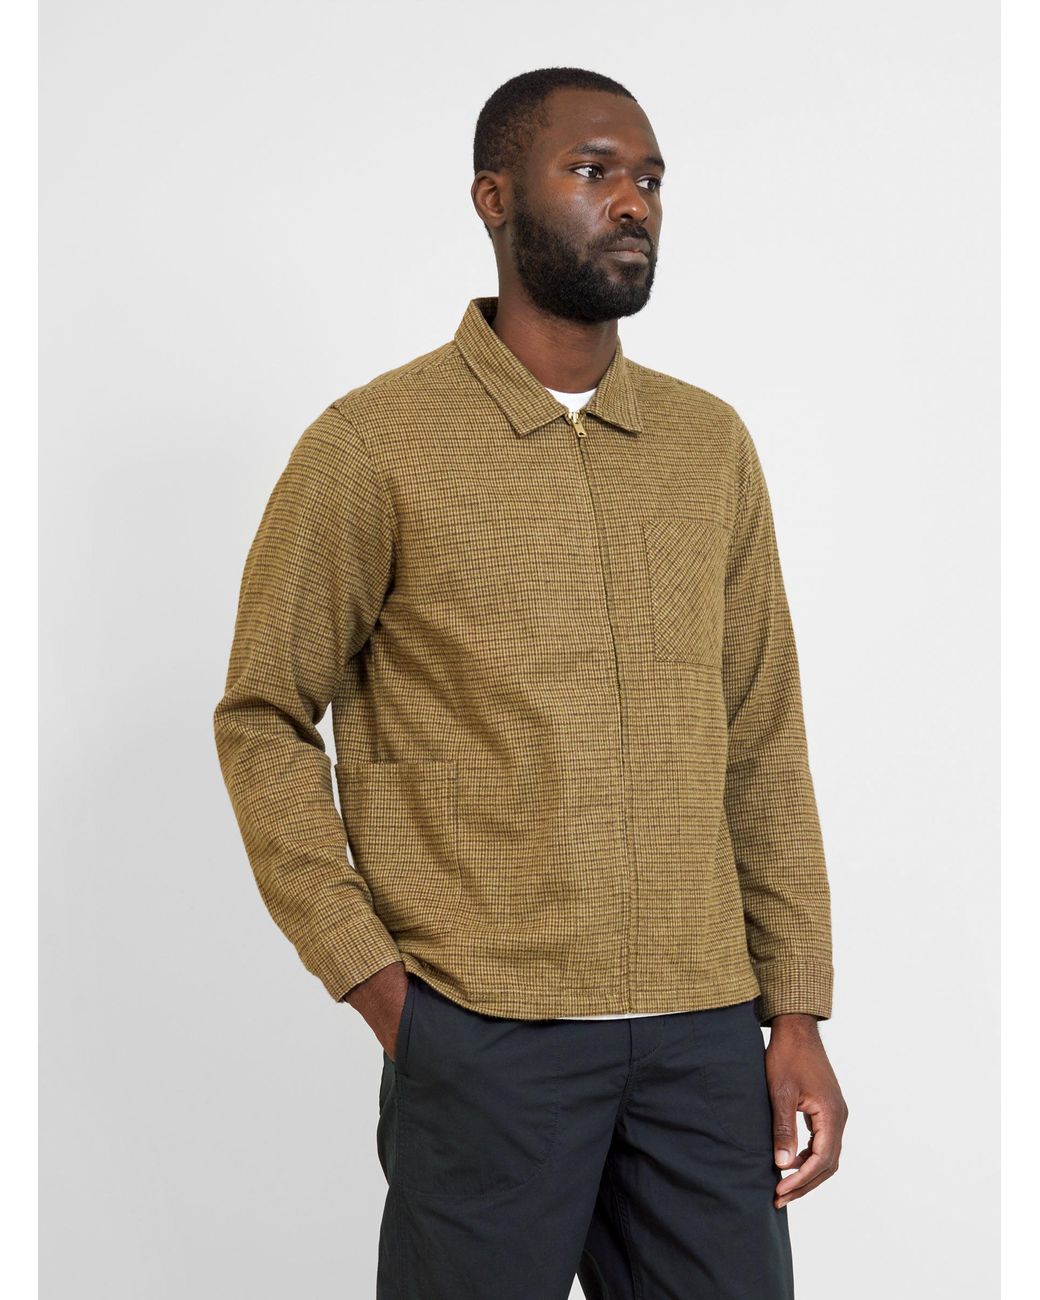 Garbstore Lazy Shirt Brown & Green for Men | Lyst